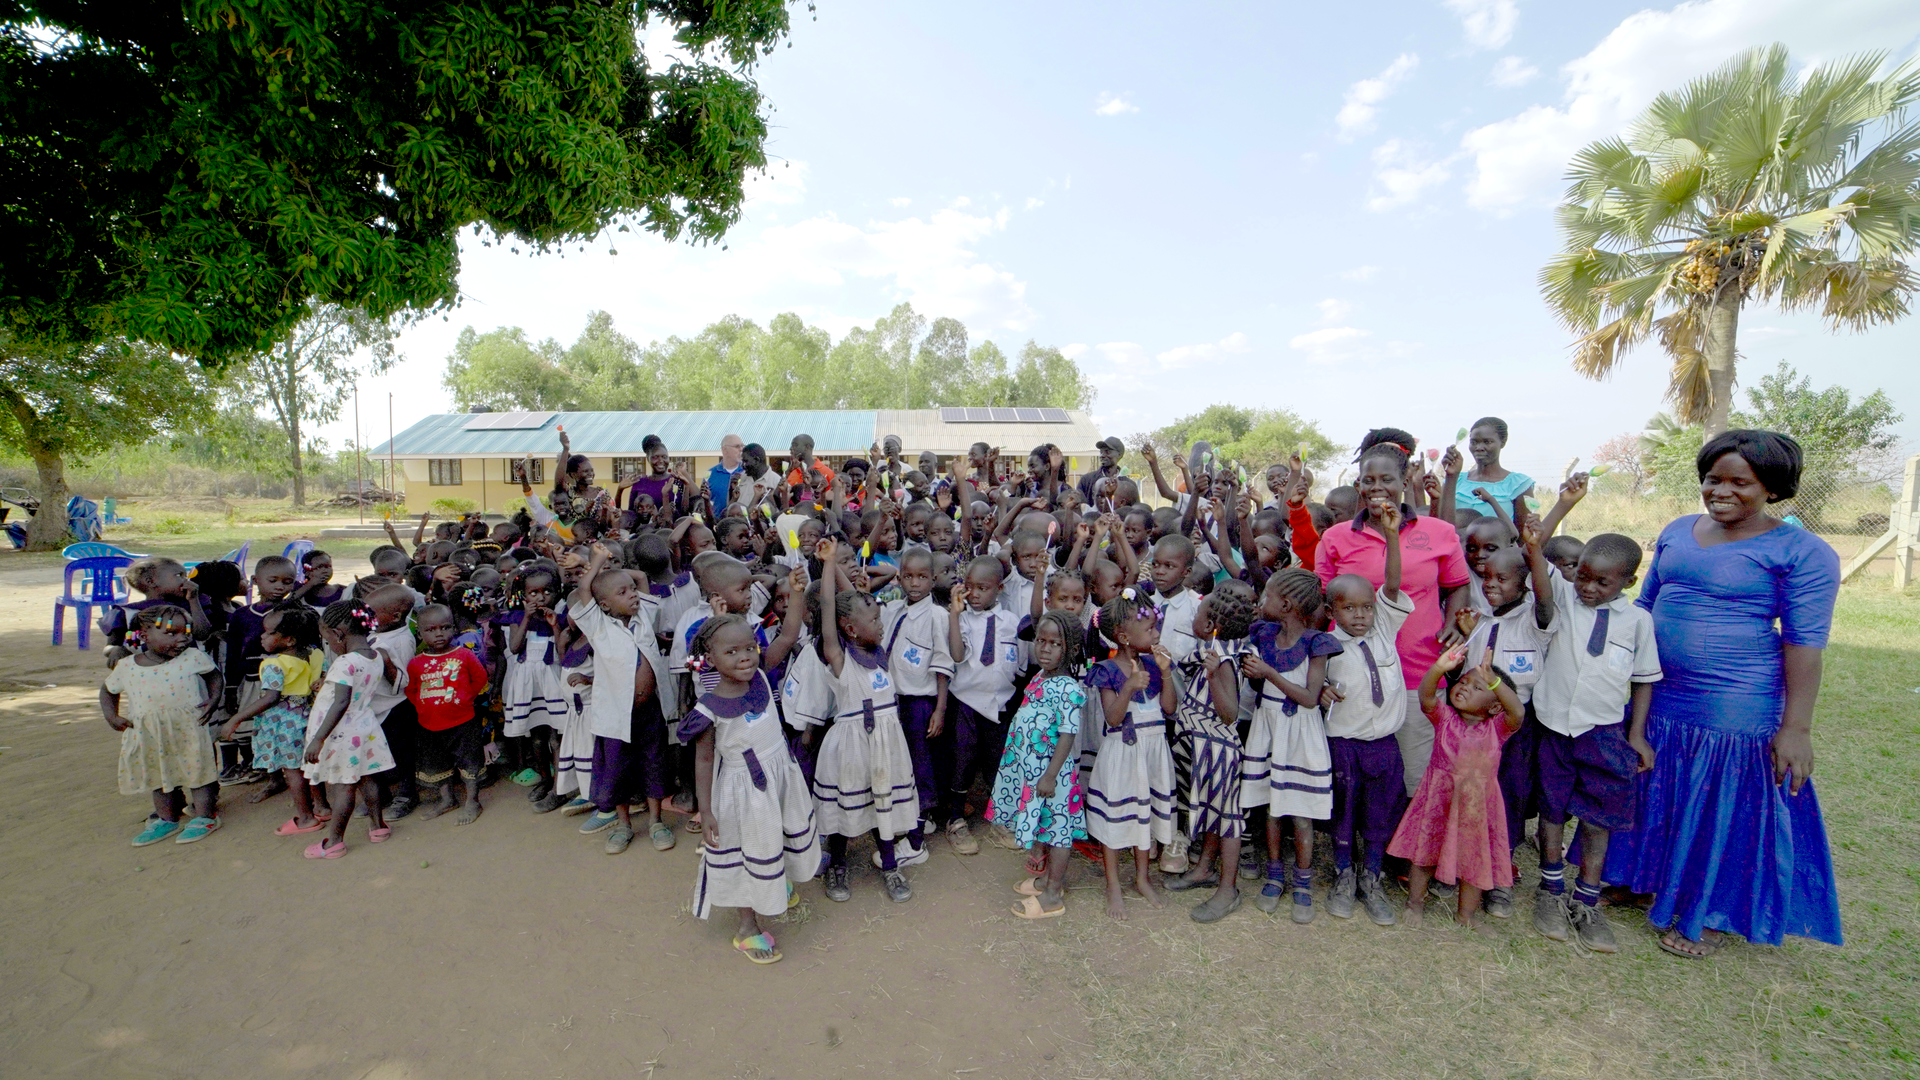 Amigos school, Open Hands Academy, in Ogul Village Uganda